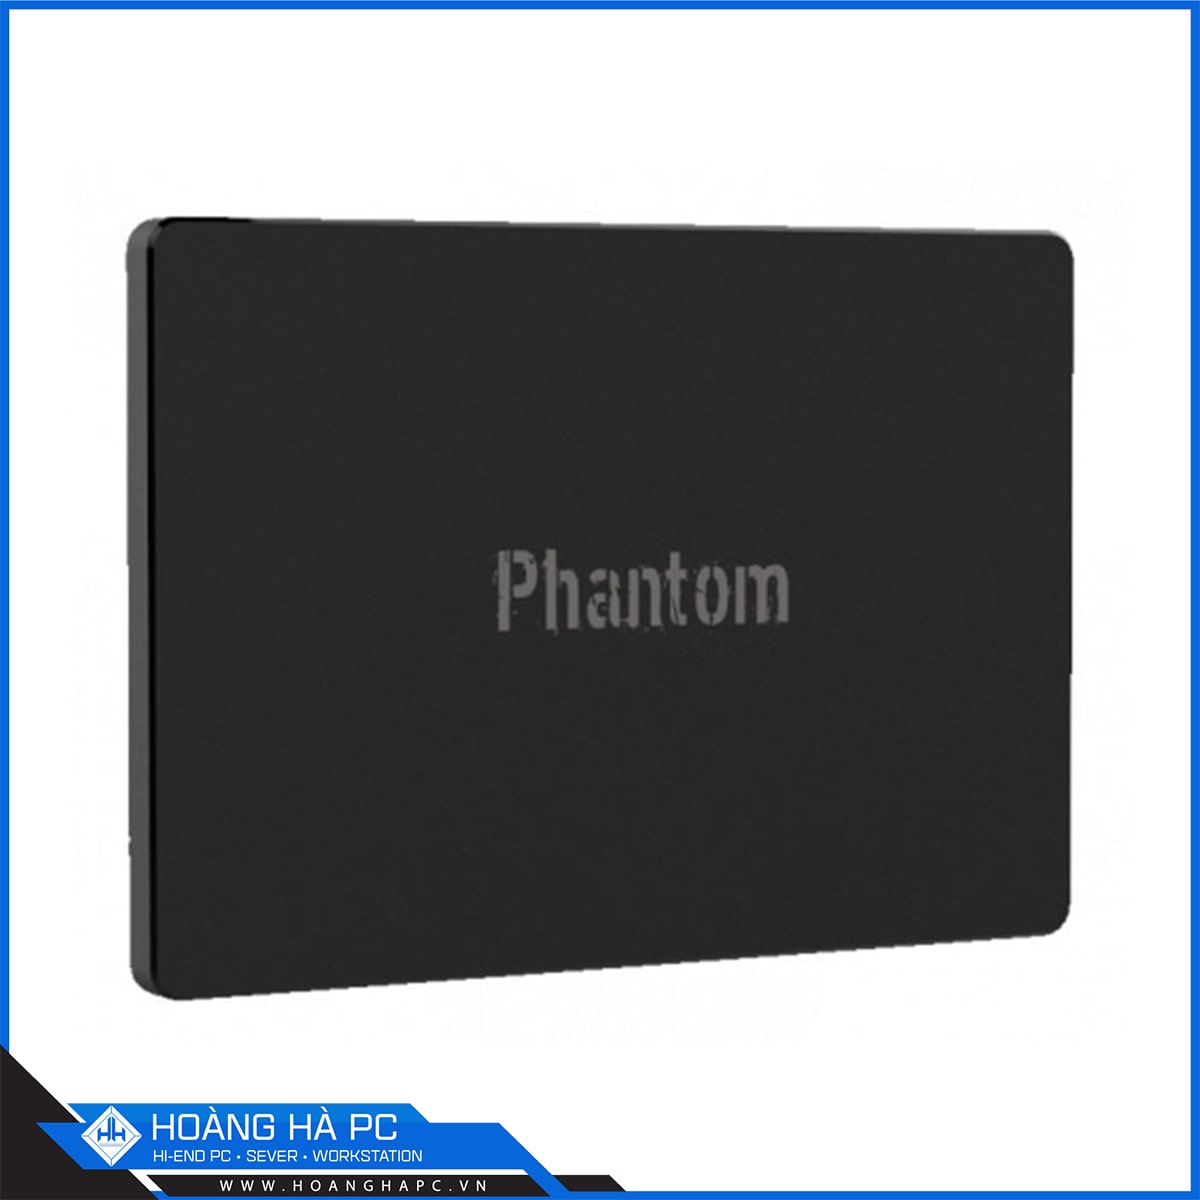 Ổ cứng SSD Verico Phantom 240G Sata III 6Gb/s SLC (Đọc 550MB/s - Ghi 500MB/s)